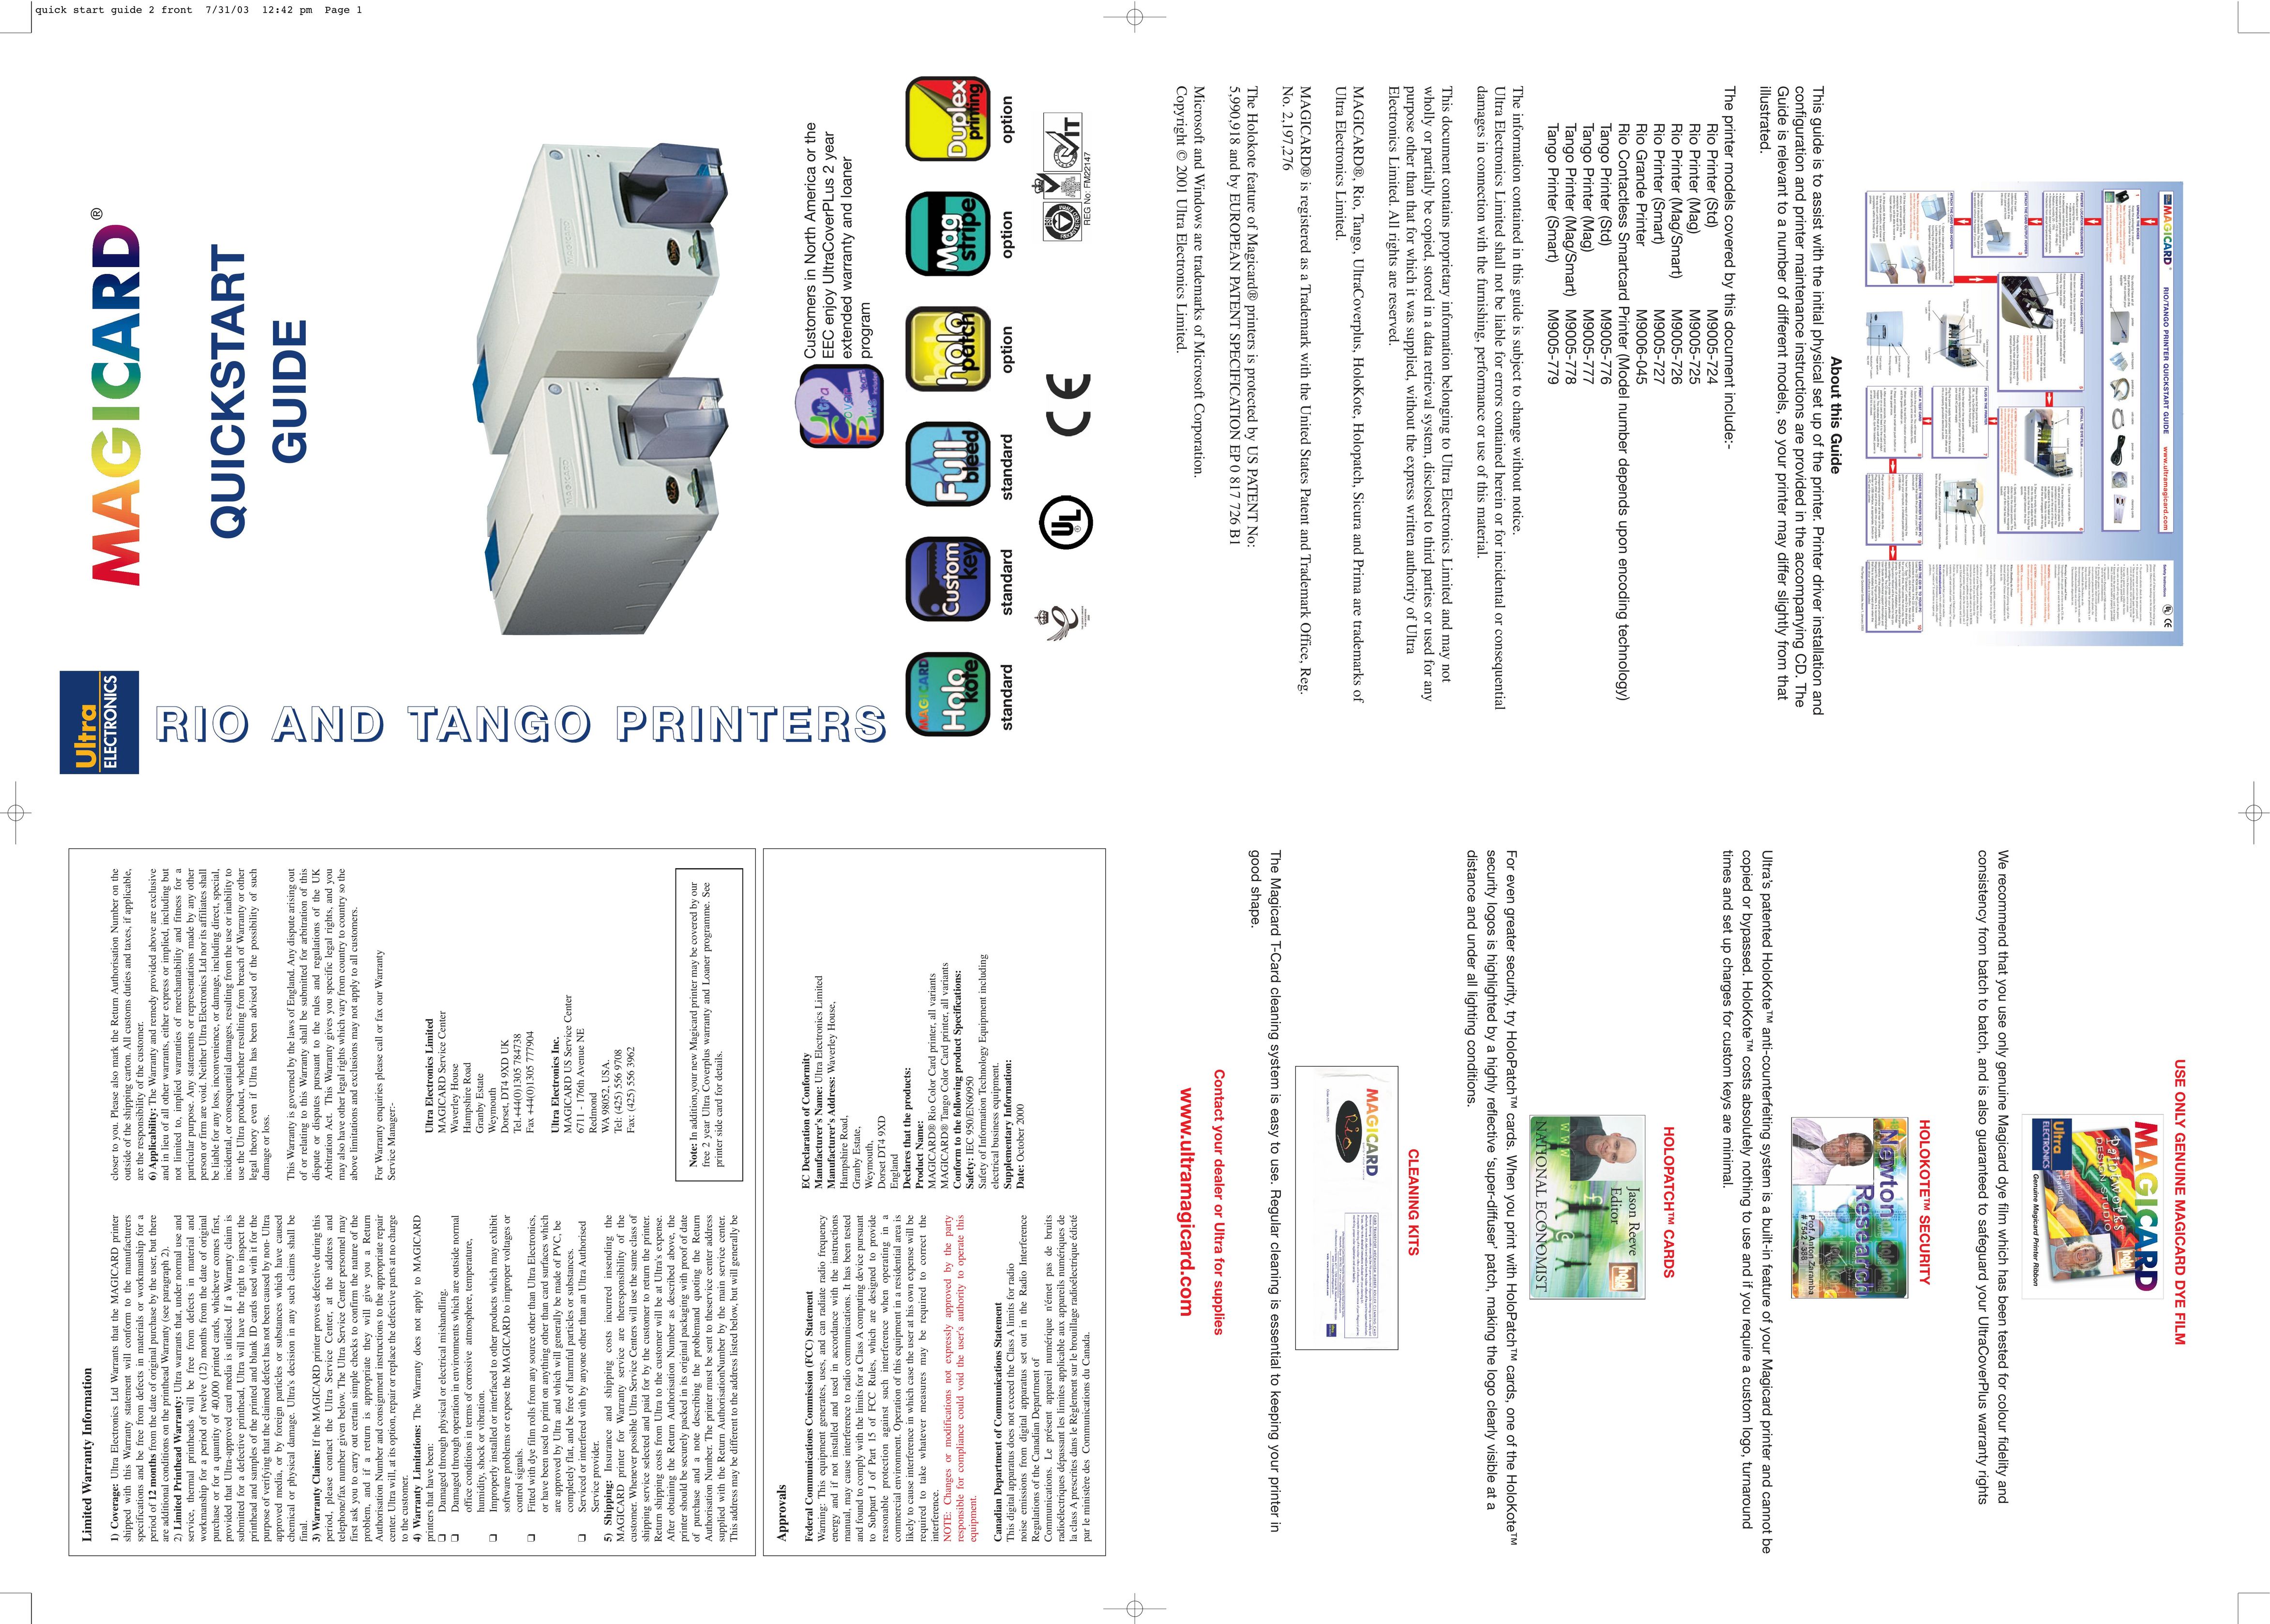 Ultra electronic M9005-727 Printer User Manual